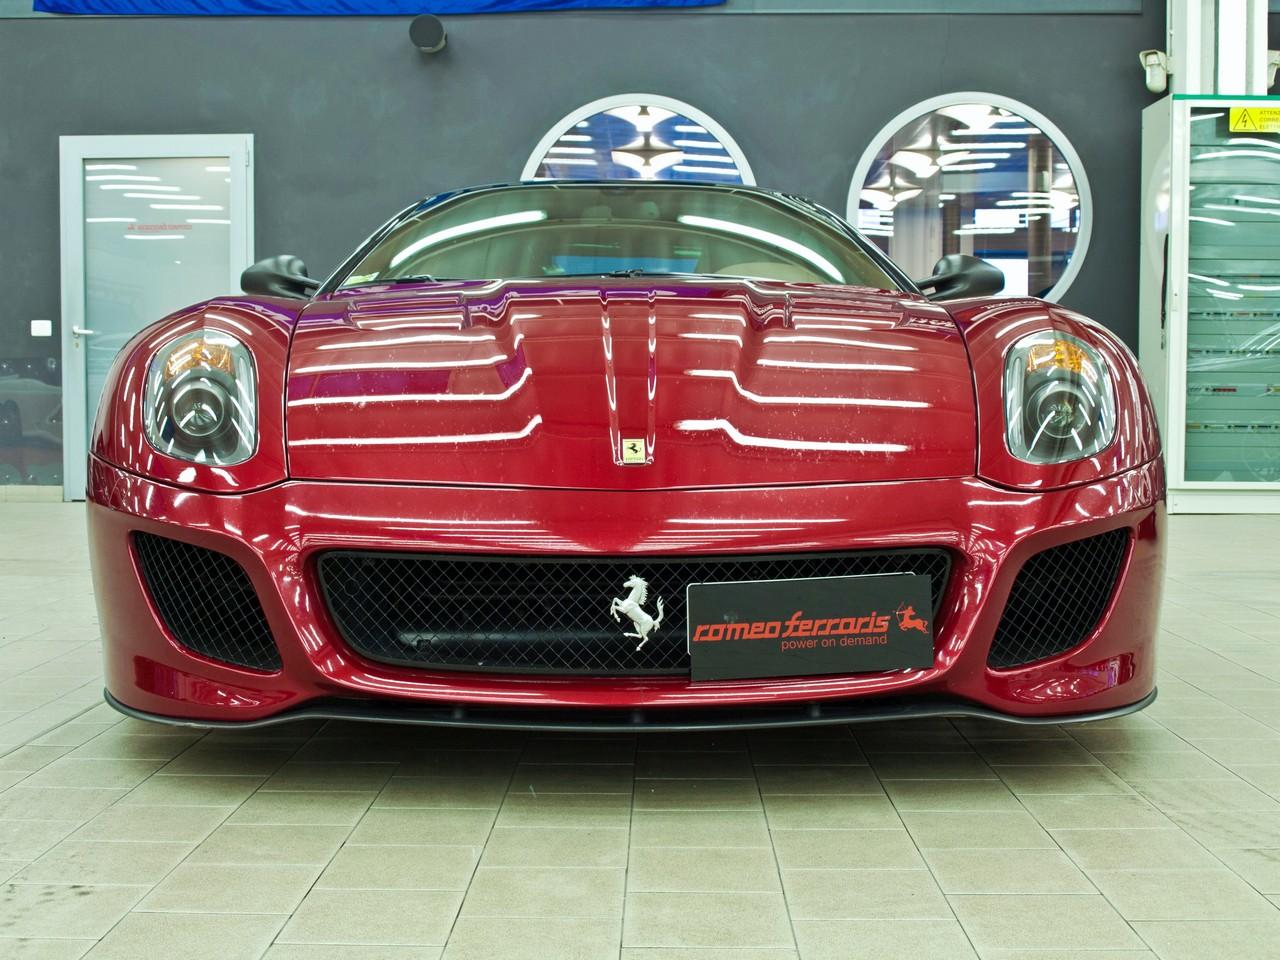 Romeo Ferraris Ferrari 599 GTO